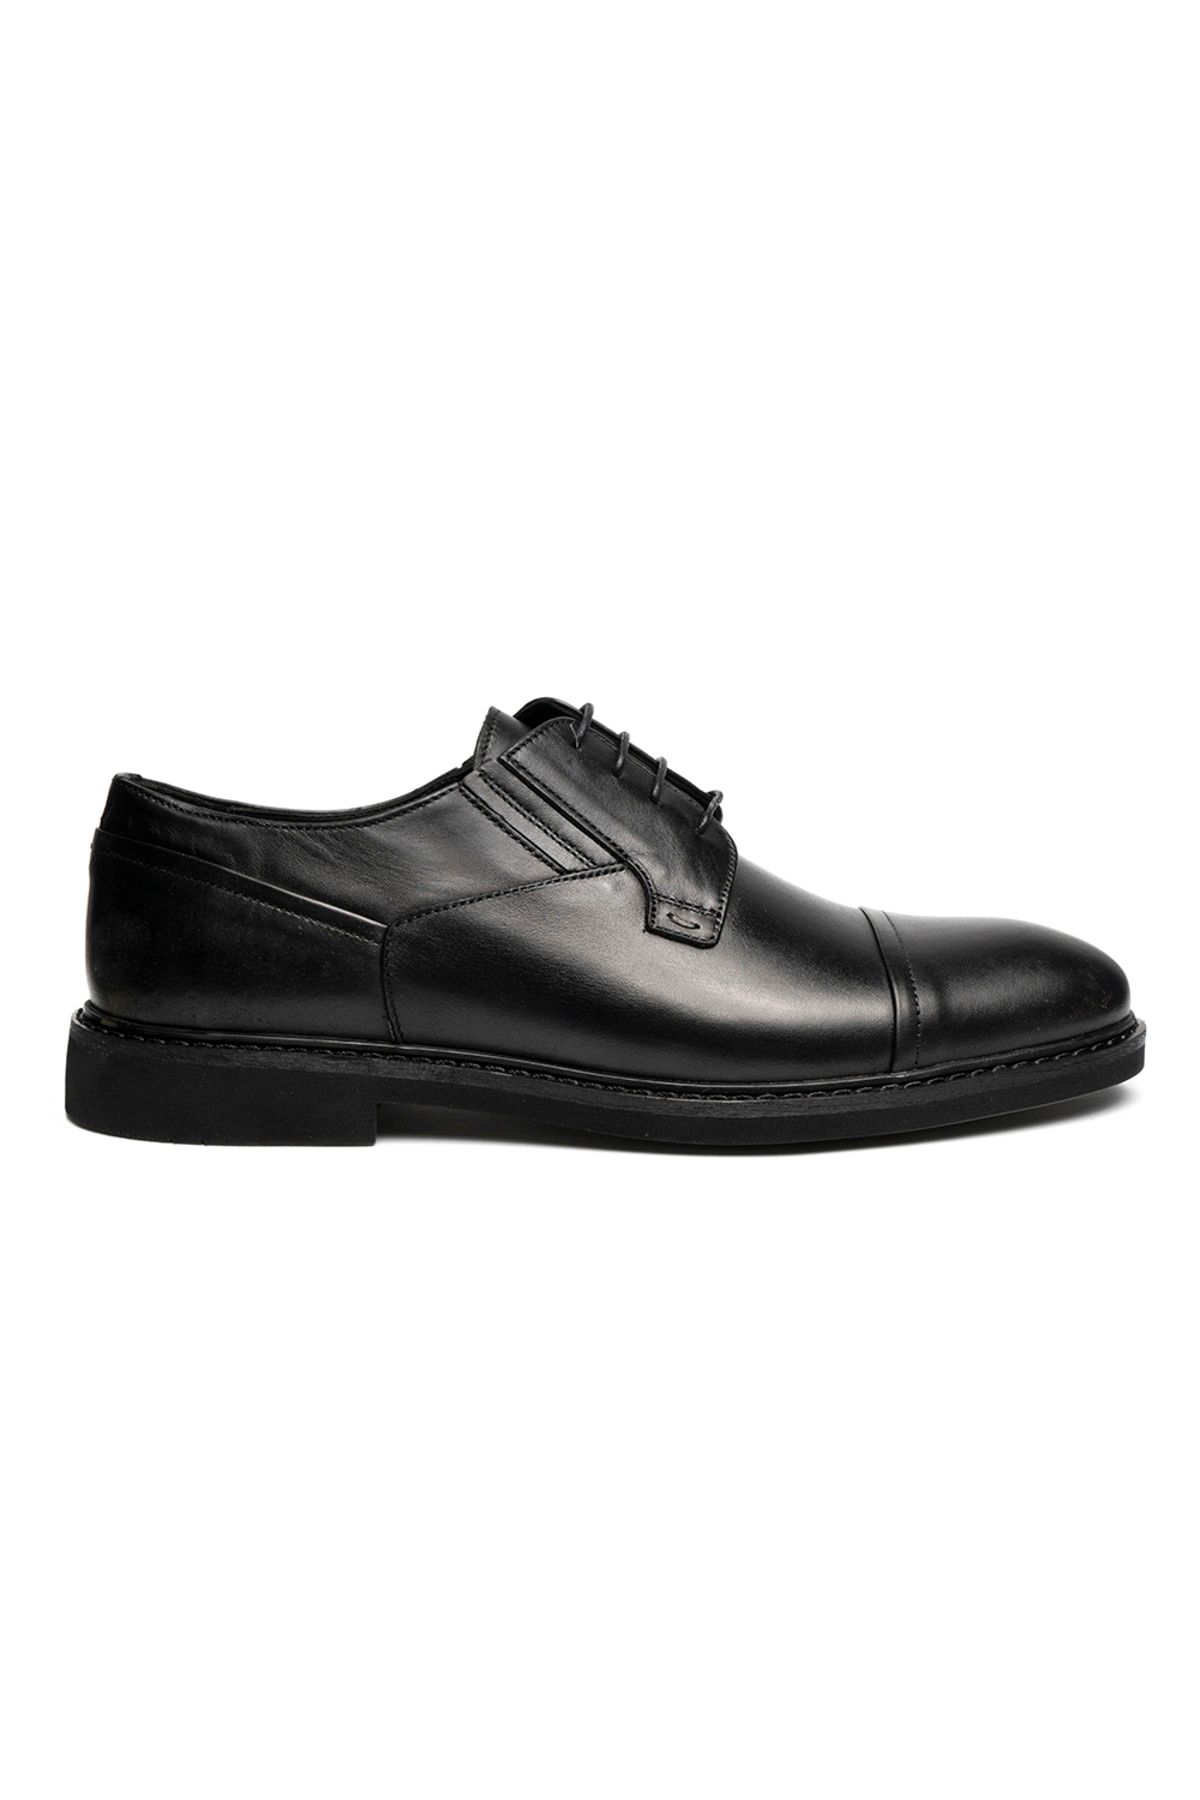 Greyder Erkek Siyah Hakiki Deri Klasik Ayakkabı 2y1ka67829